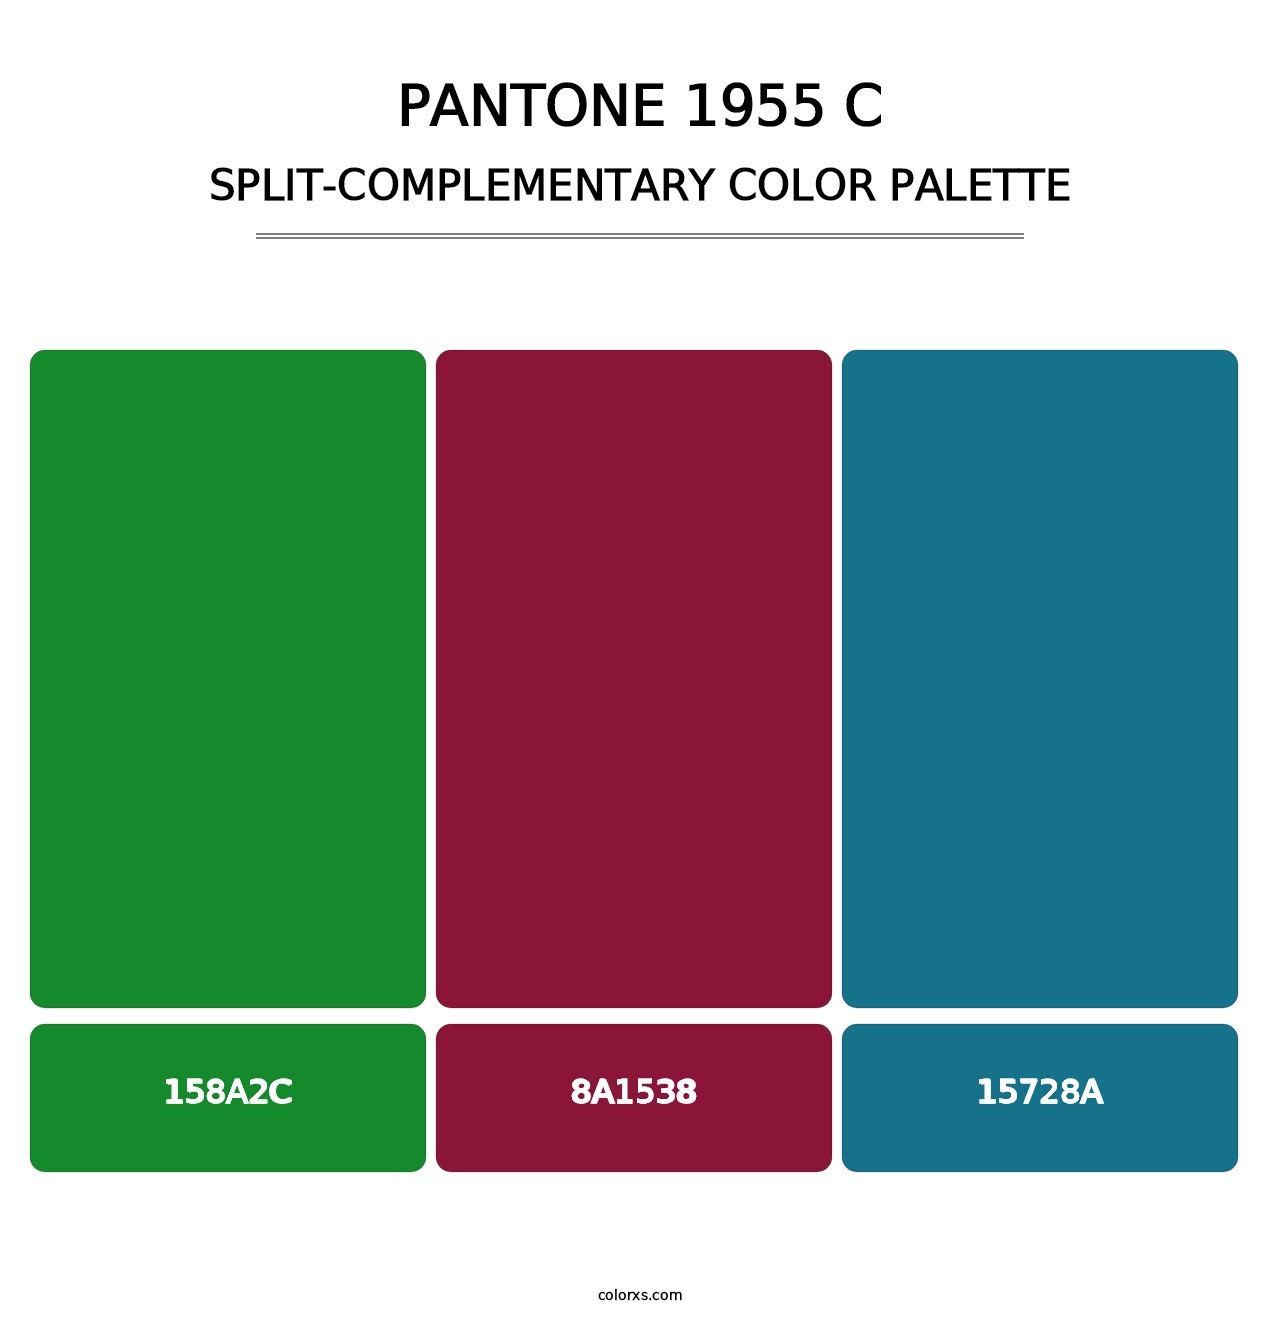 PANTONE 1955 C - Split-Complementary Color Palette